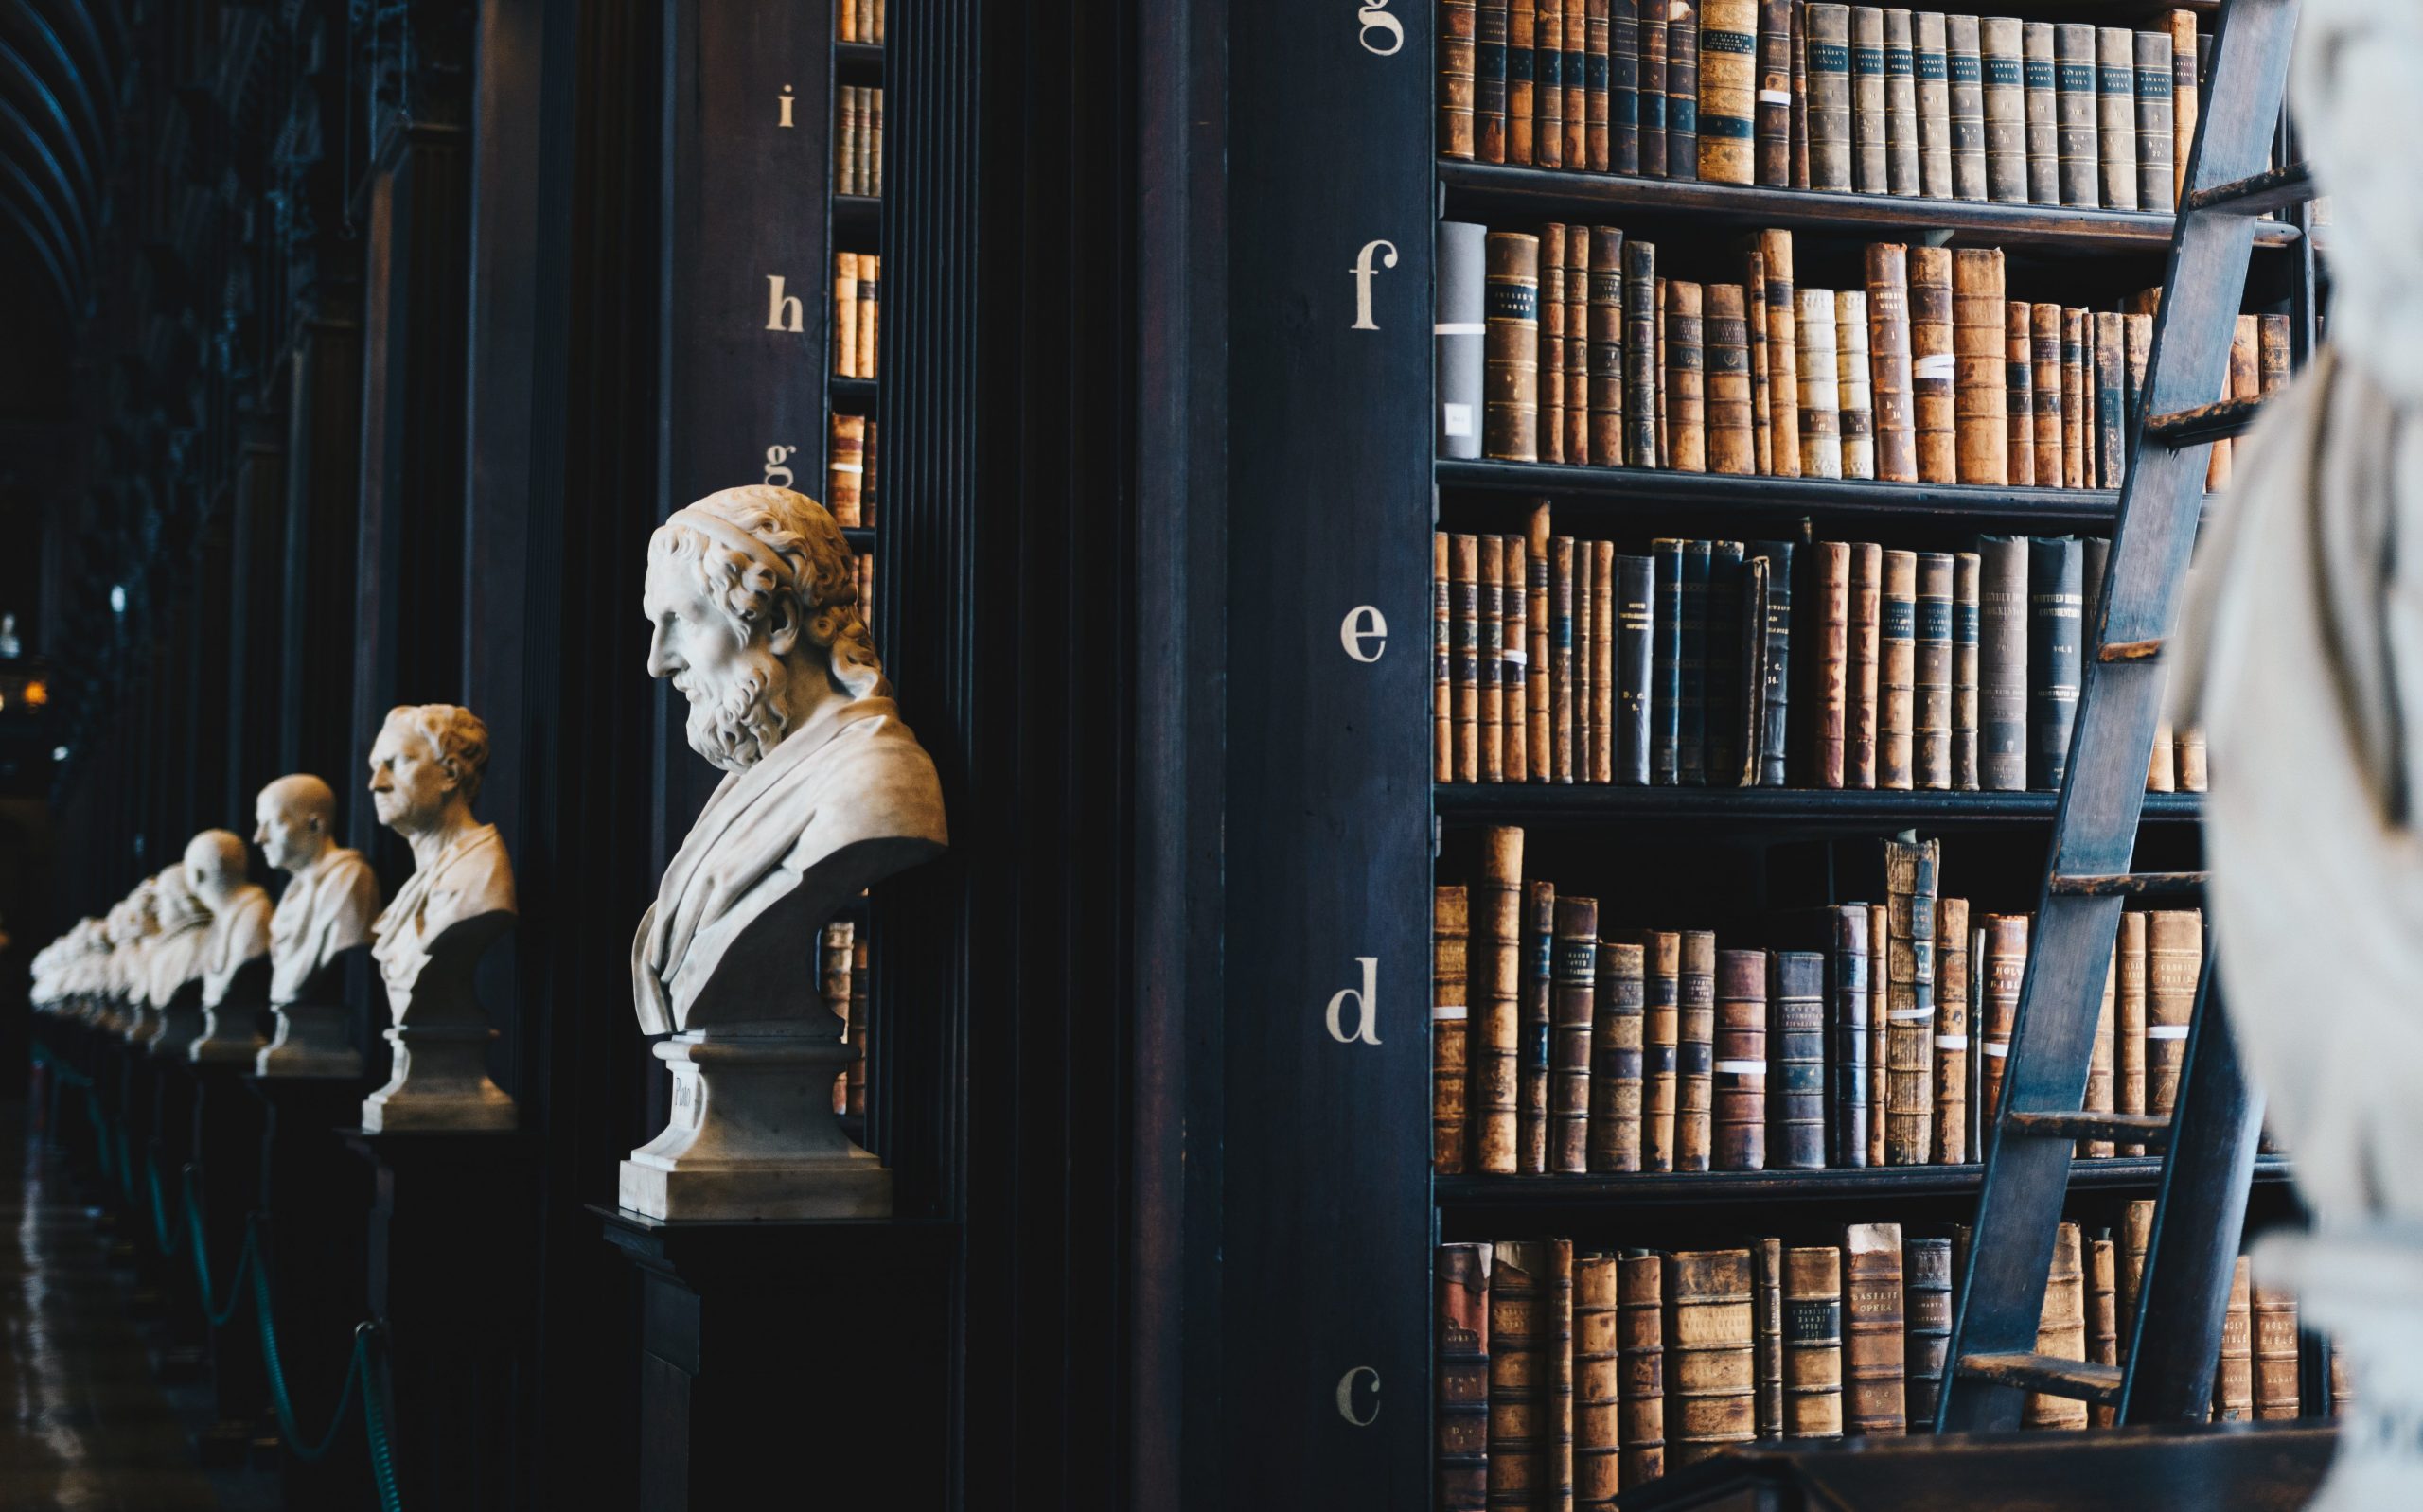 Bibliothek im antiken Stil mit Philosophen aus Stein